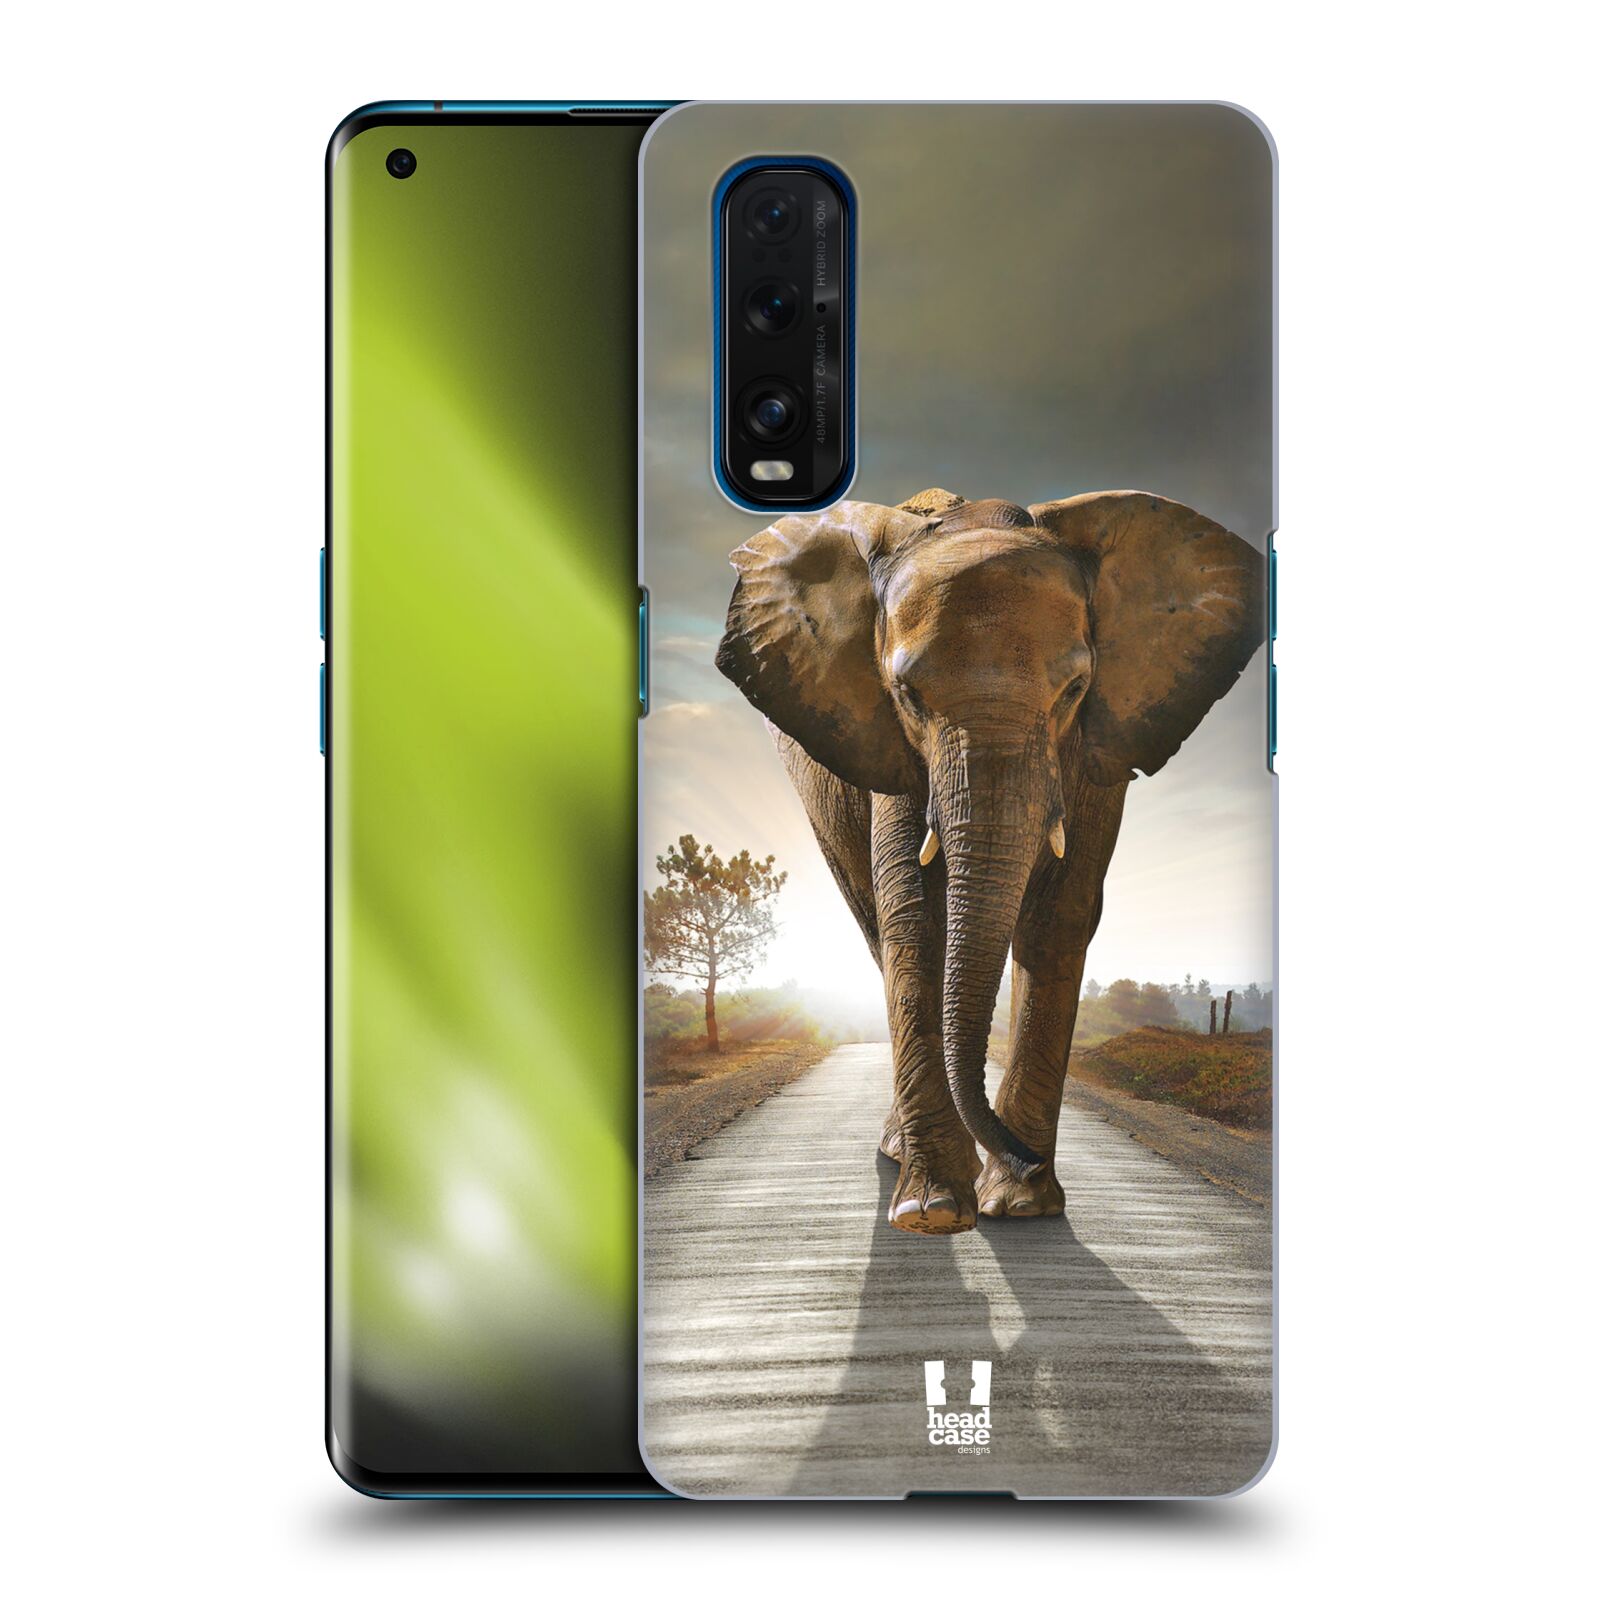 Zadní obal pro mobil Oppo Find X2 - HEAD CASE - Svět zvířat kráčející slon